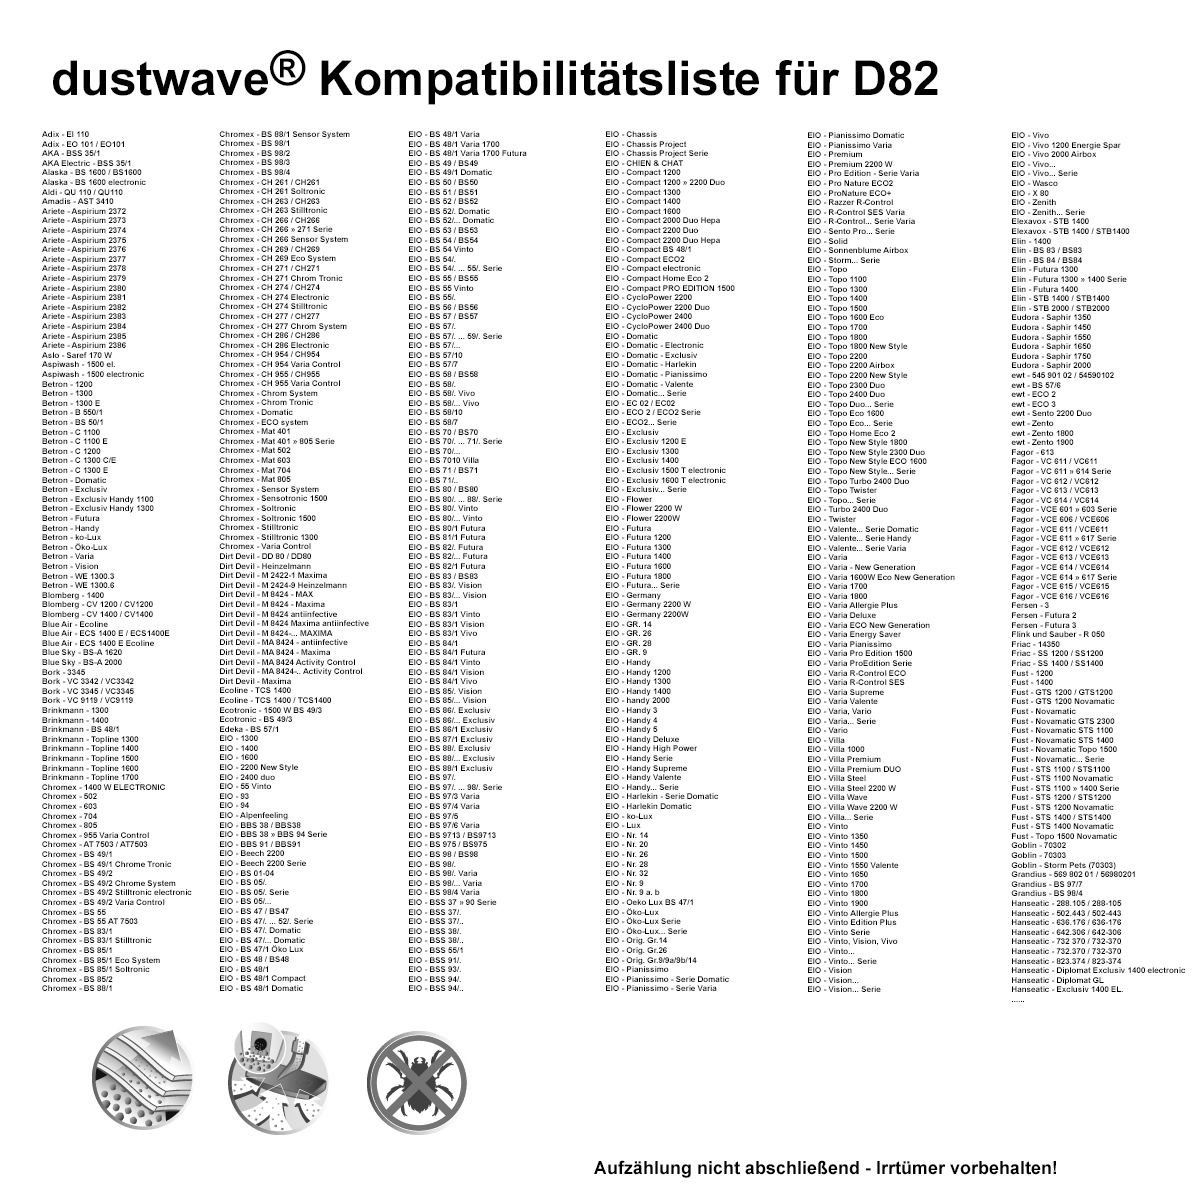 Dustwave® 10 Staubsaugerbeutel für Base BA 6002 - hocheffizient mit Hygieneverschluss - Made in Germany